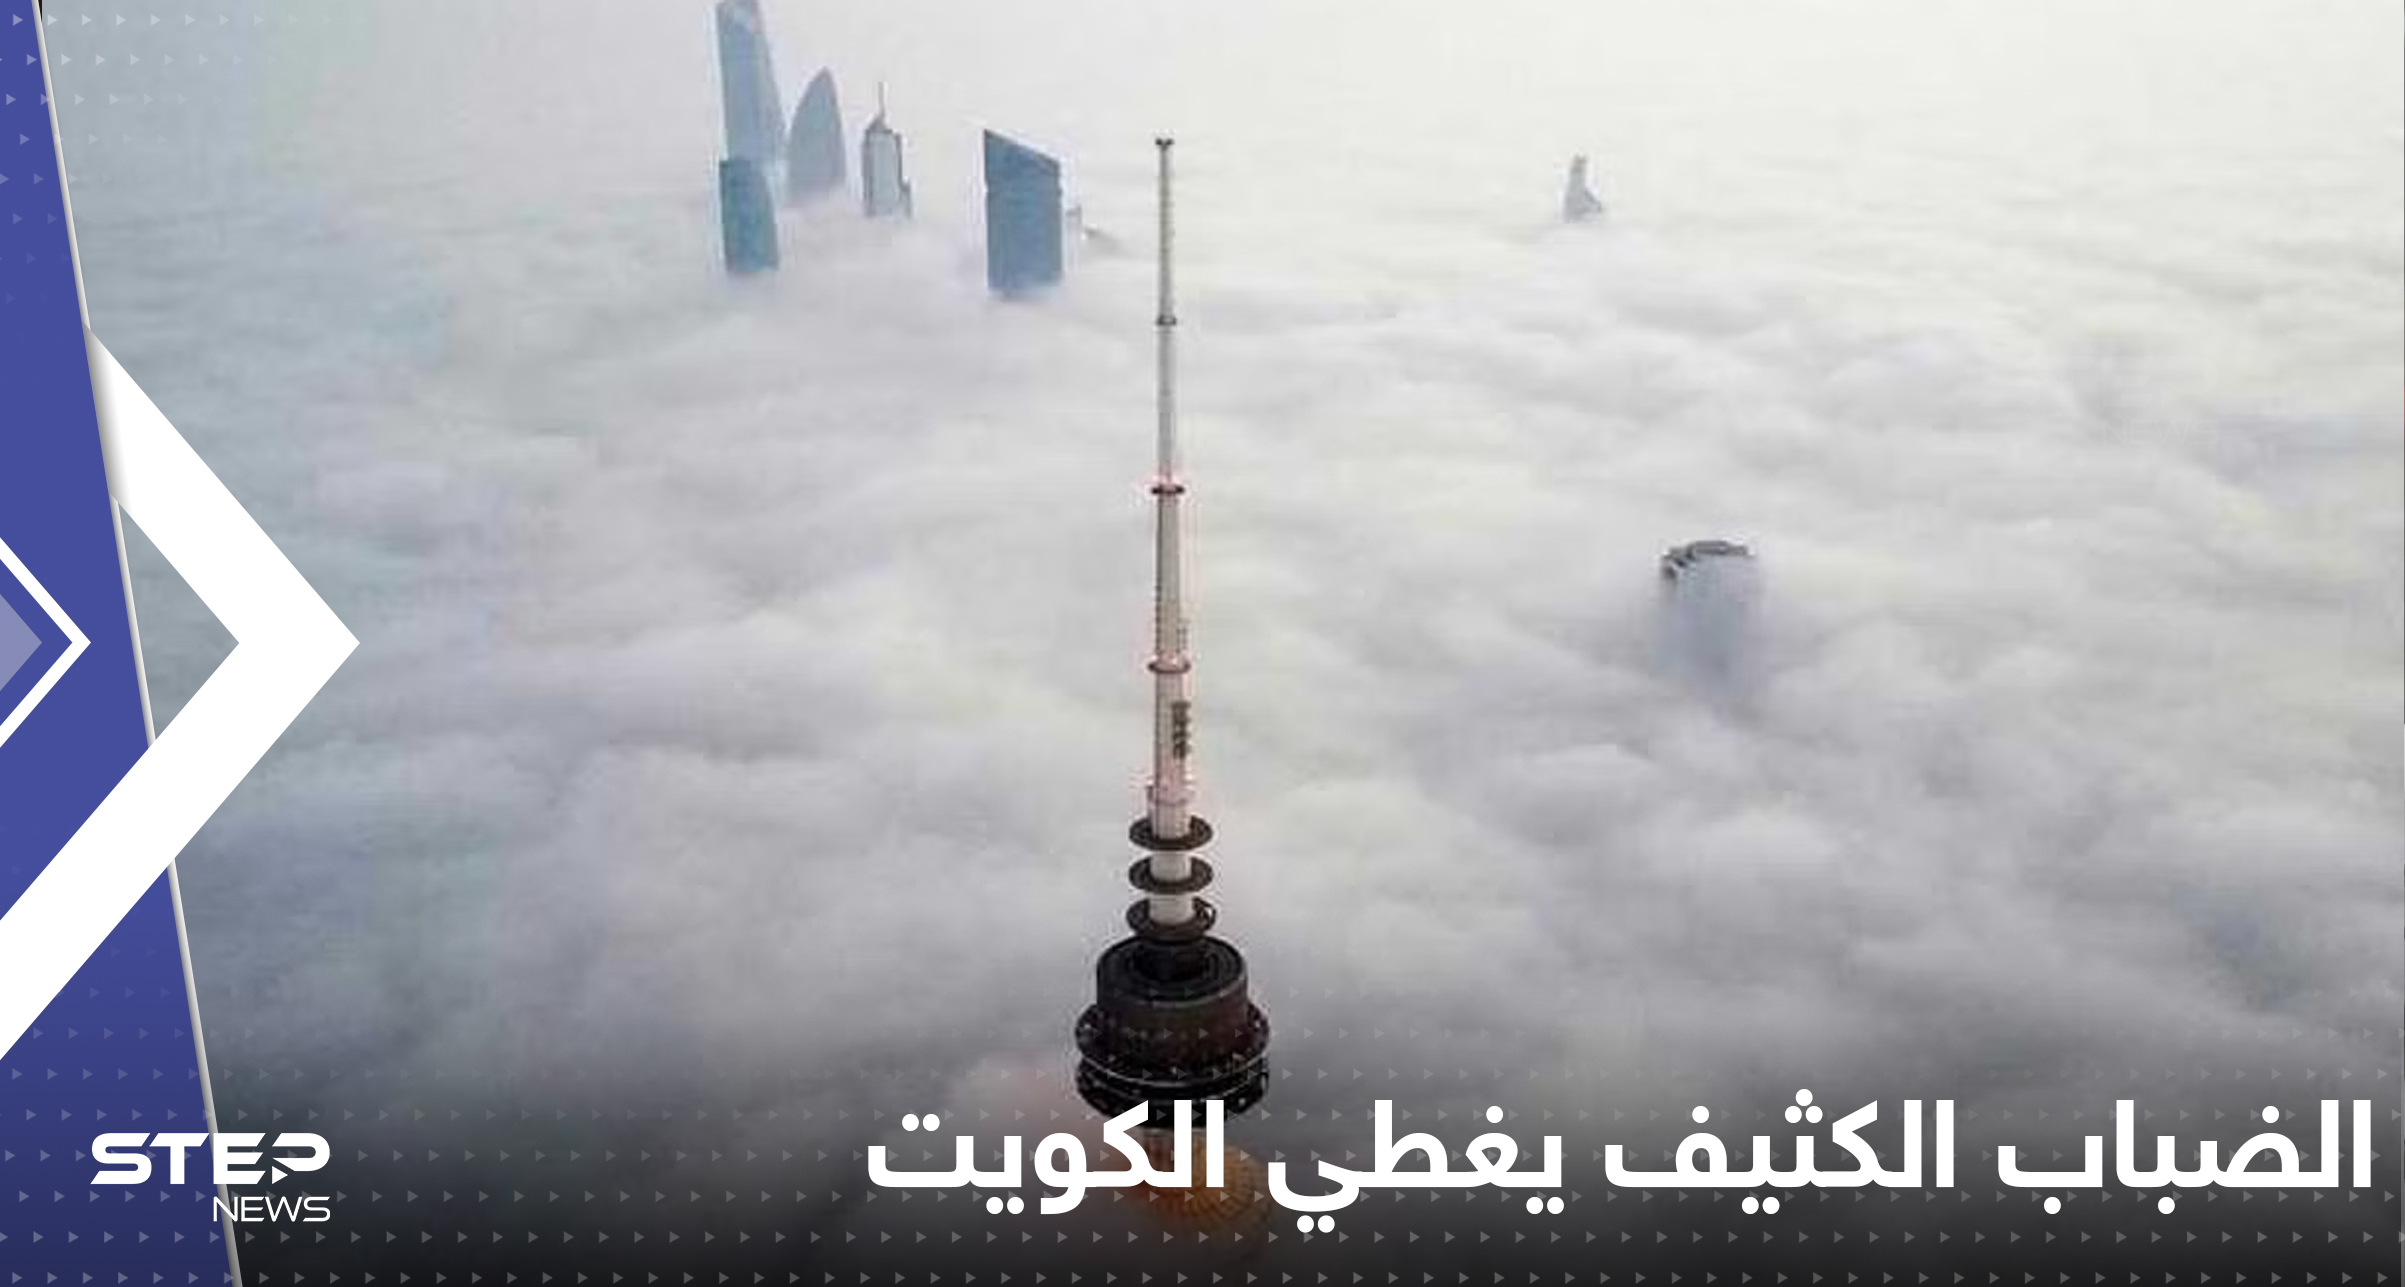 الضباب الكثيف يغطي الكويت